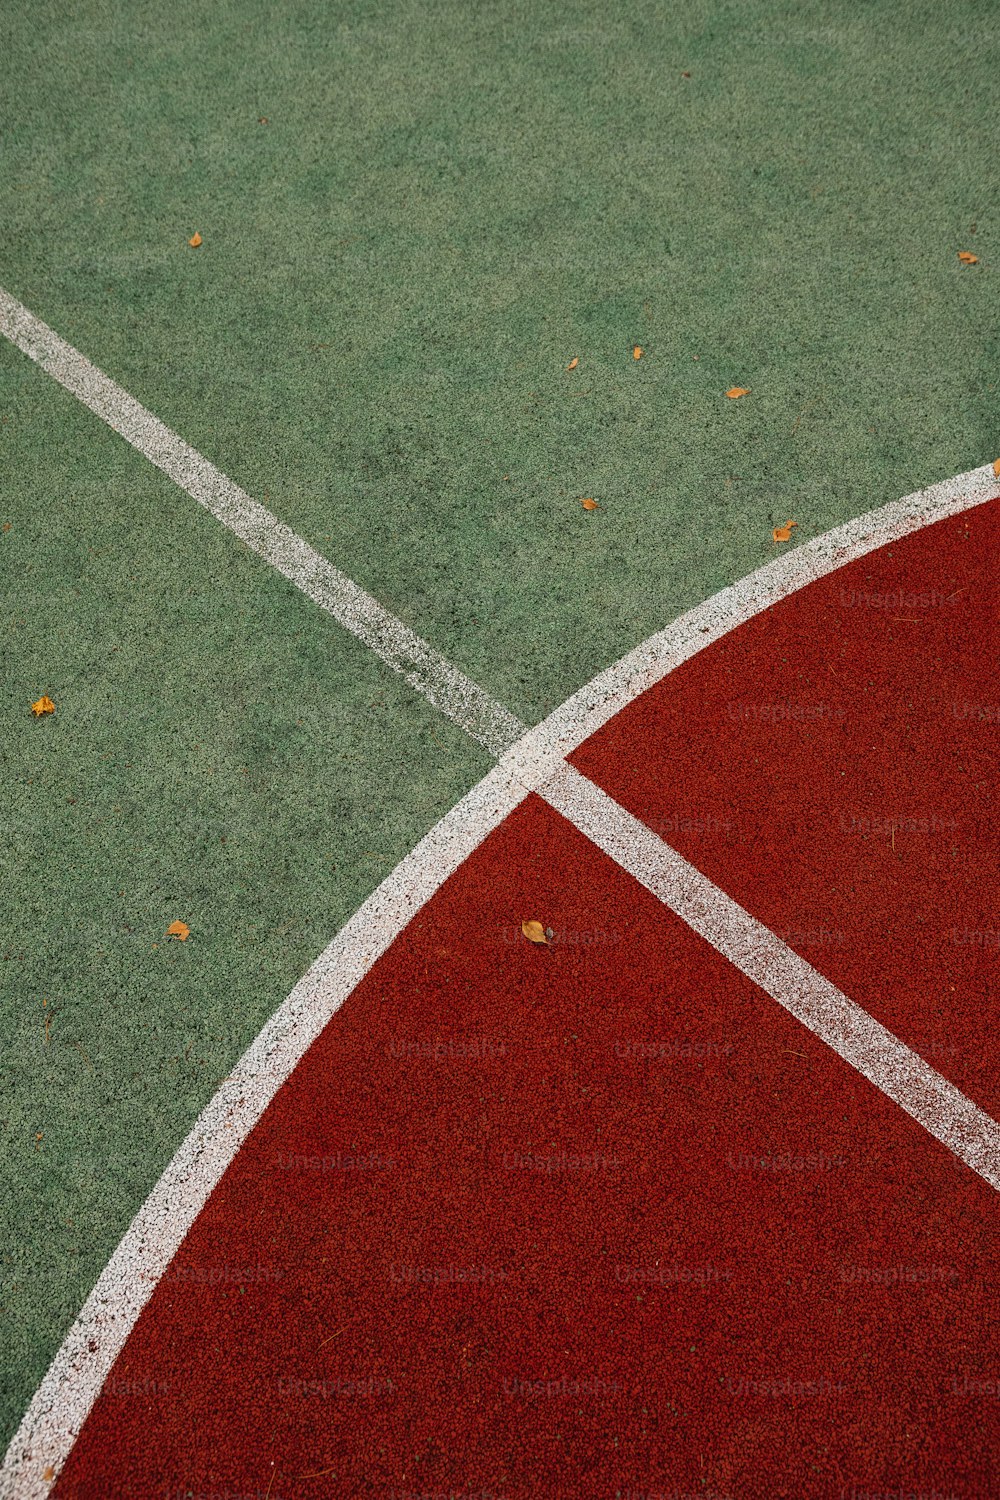 Eine Nahaufnahme eines Tennisplatzes mit einem Tennisschläger